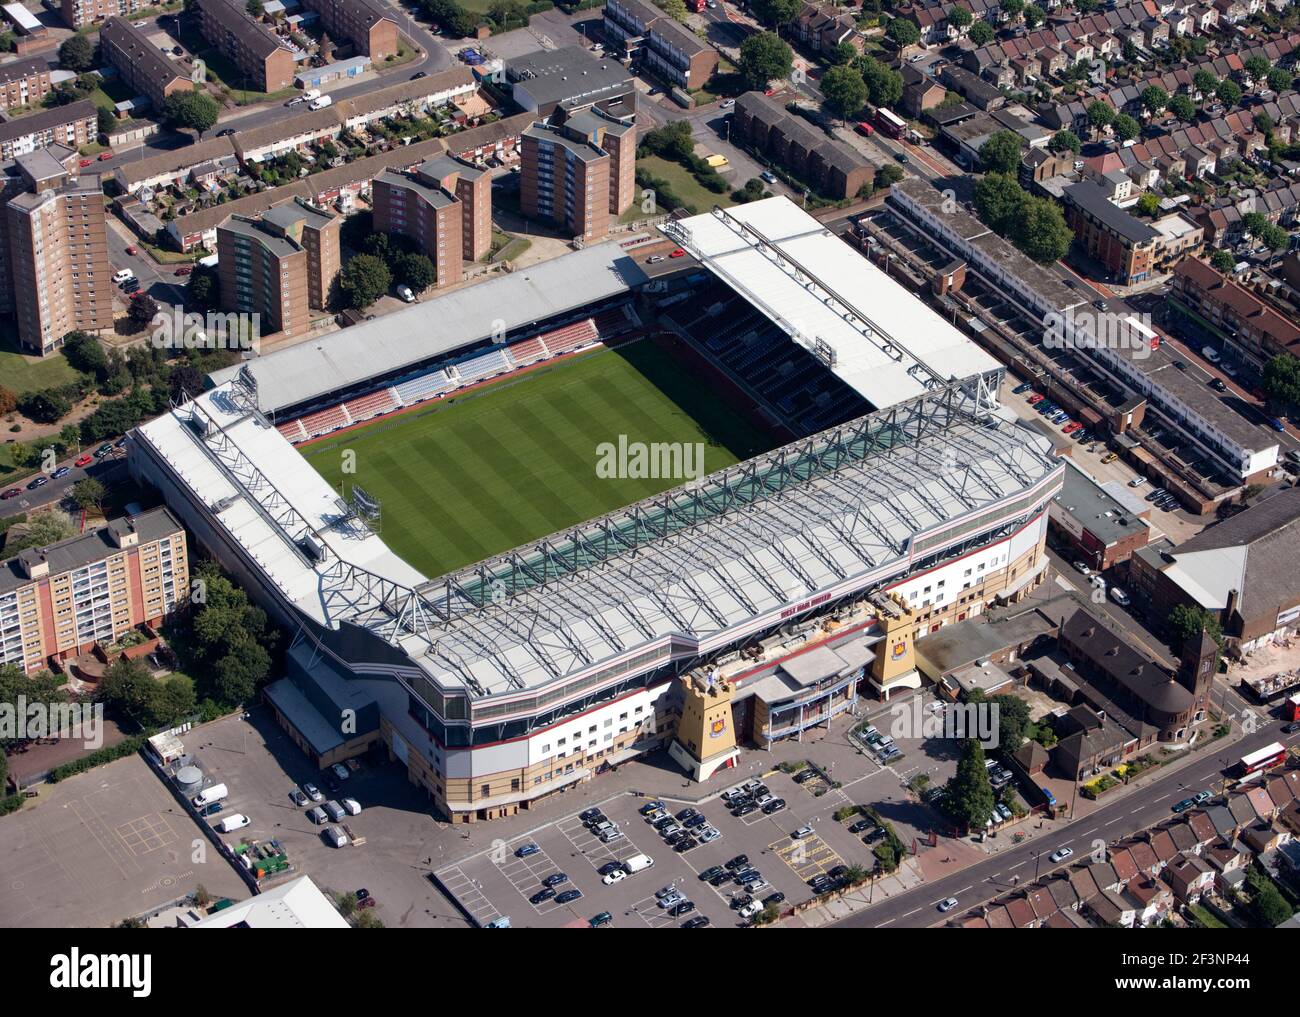 UPTON PARK, London. Luftaufnahme von Boleyn Ground, der Heimat von West Ham United FC seit 1904. Fotografiert im Jahr 2009. Stockfoto